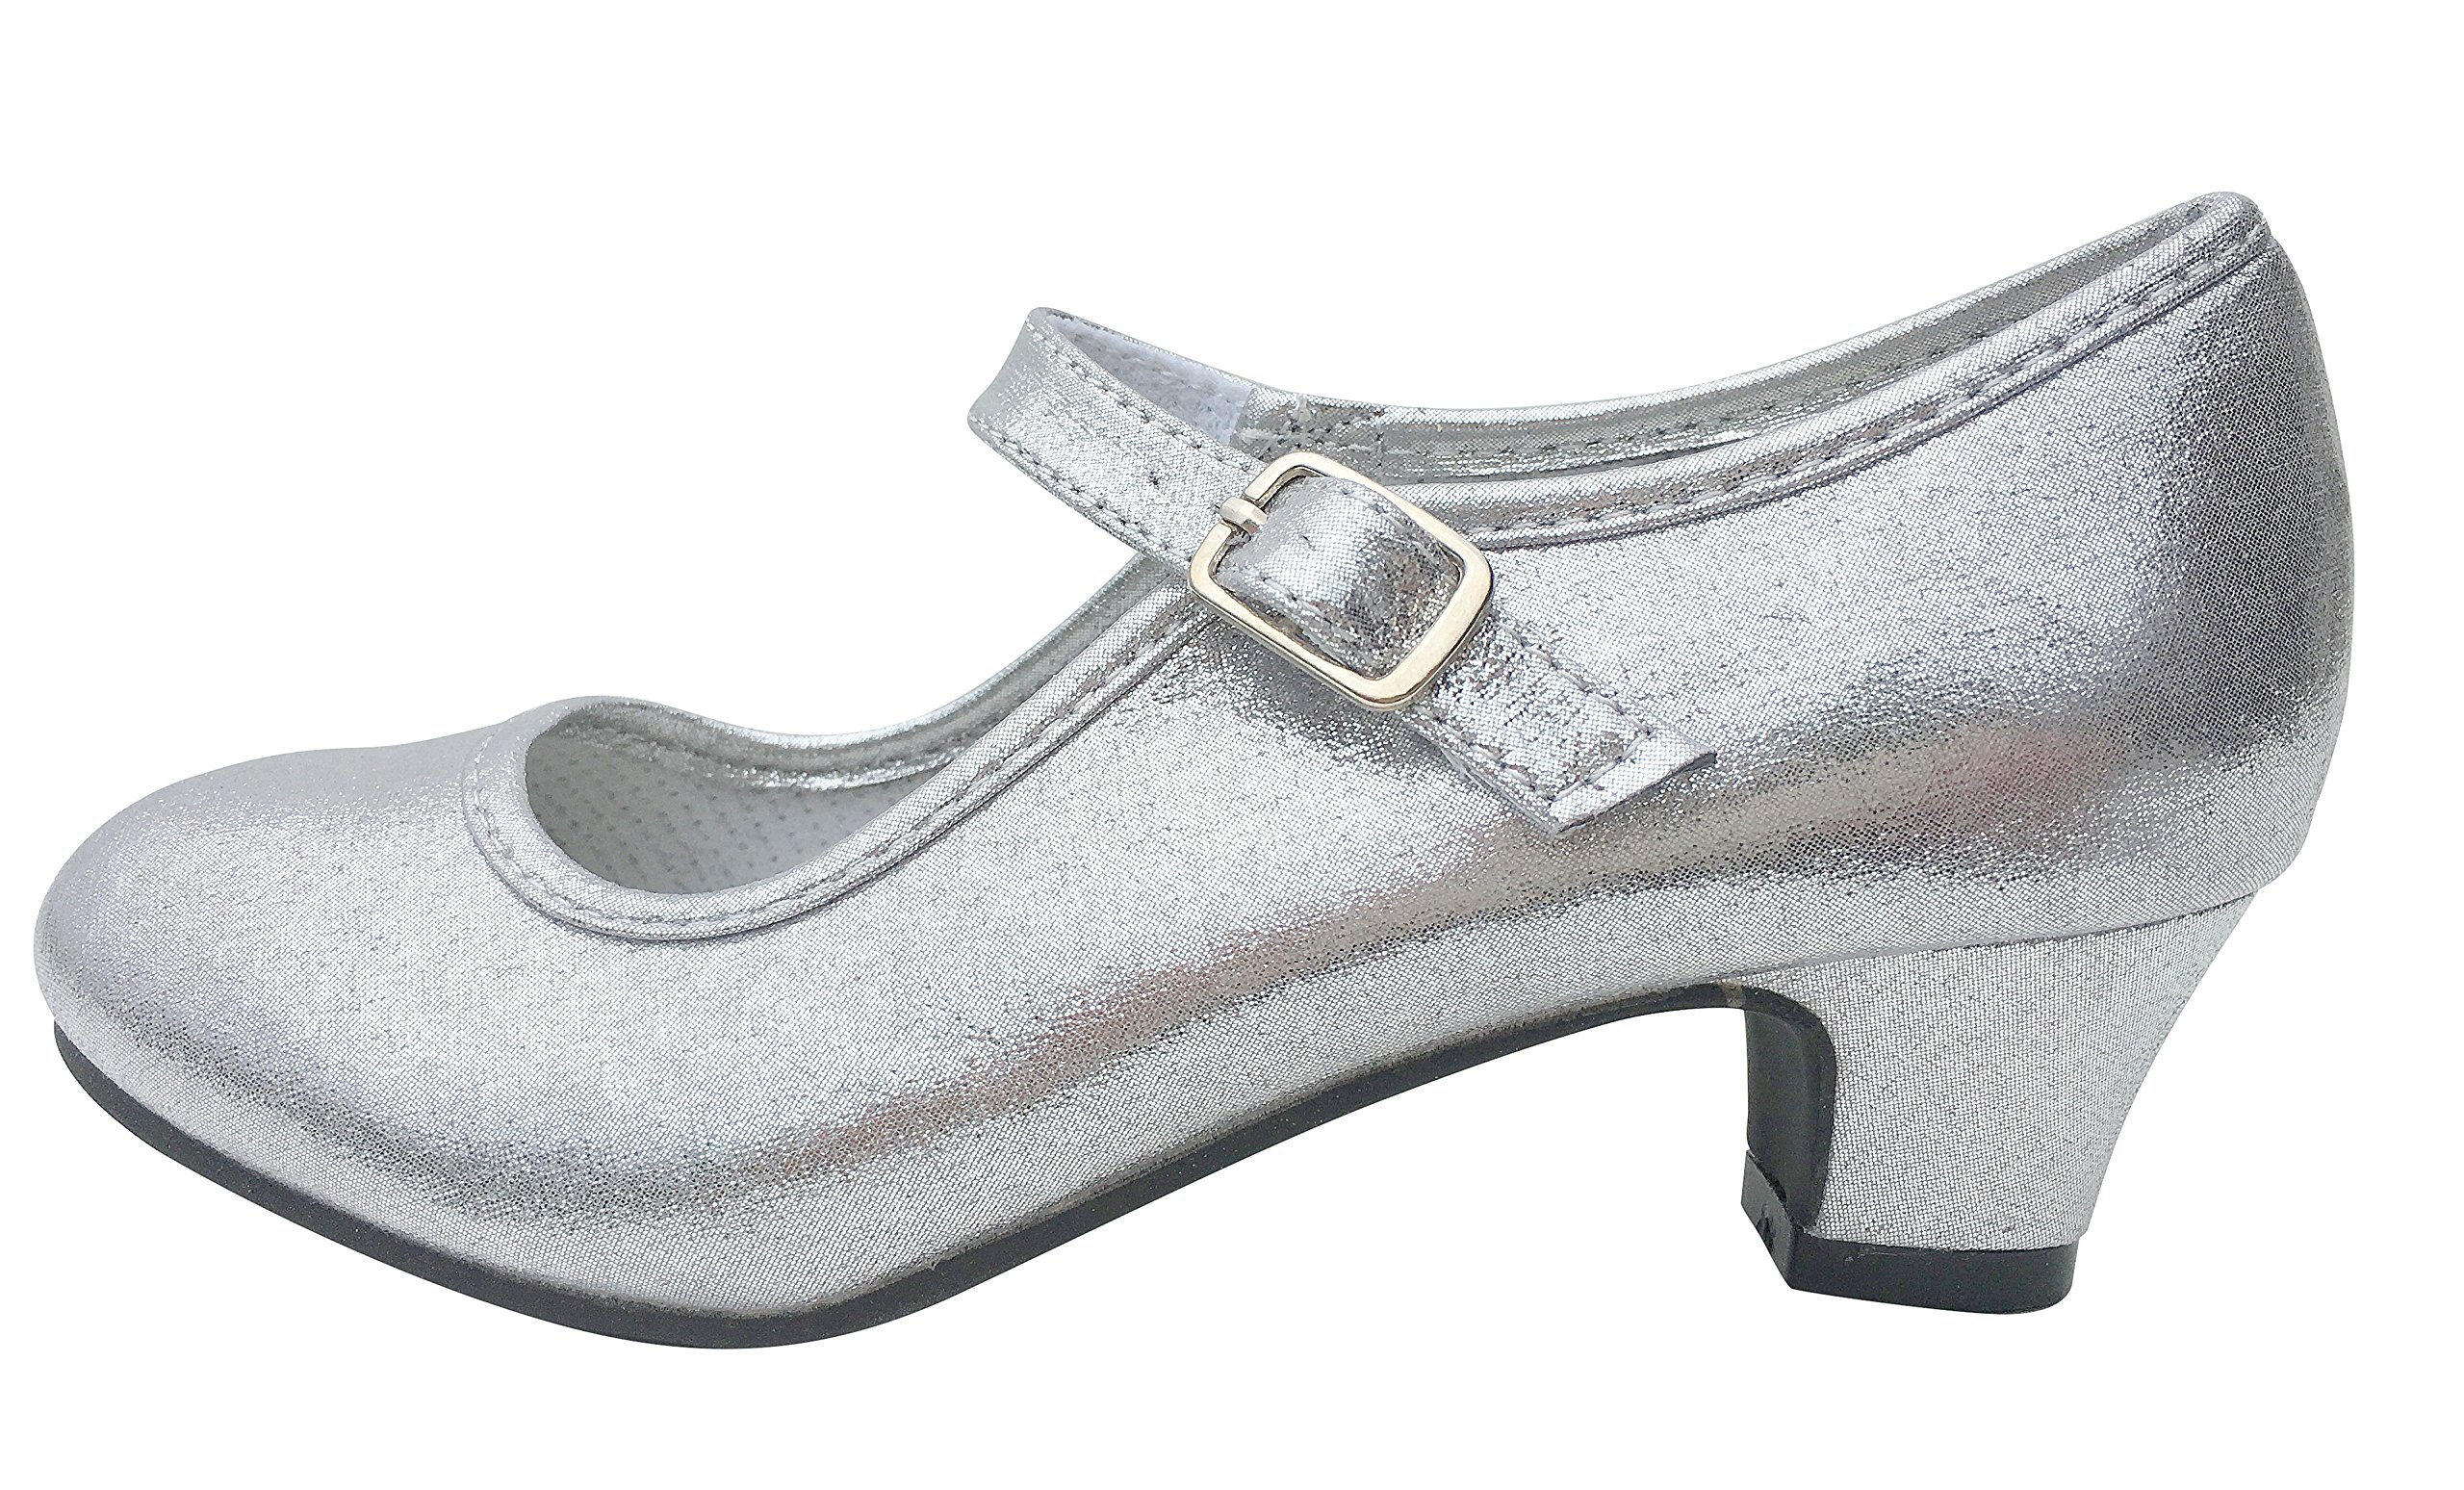 La Senorita Prinzessinnen Schuhe Silber glänzend für Mädchen - Brautjungfer Schuhe beim Hochzeit - Spanische Festliche Flamenco Tanz Schuhe für Kinder – ELSA Eisprinzessin